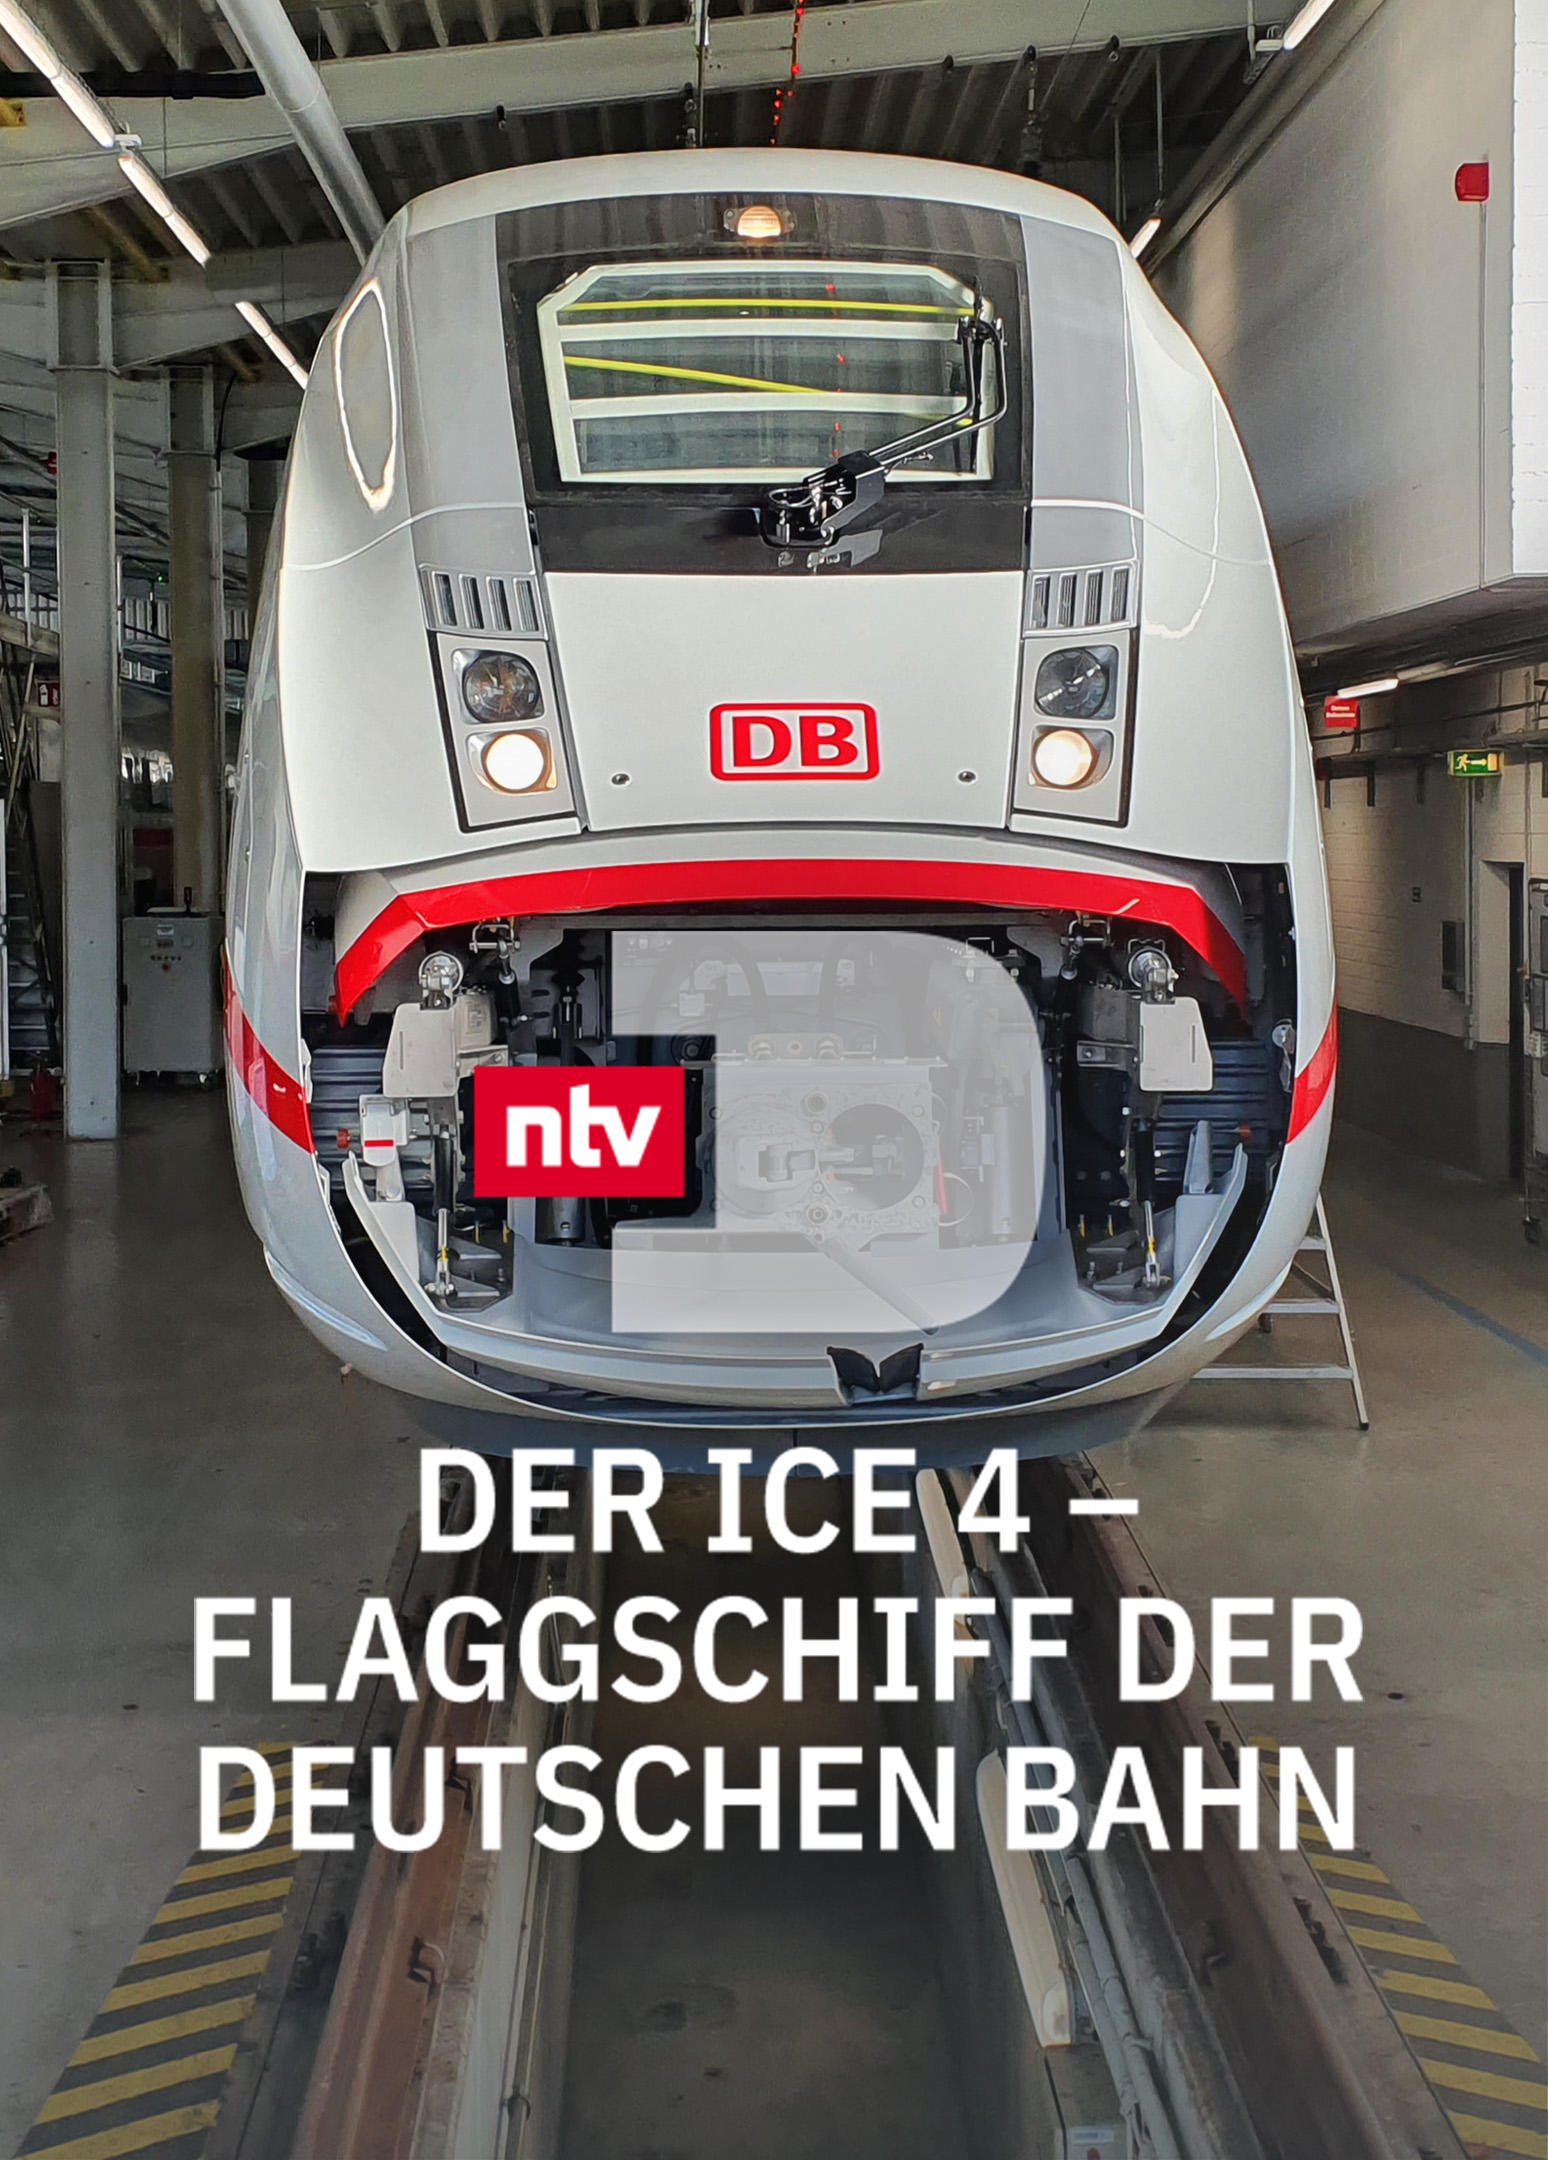 Der ICE 4 - Flaggschiff der Deutschen Bahn